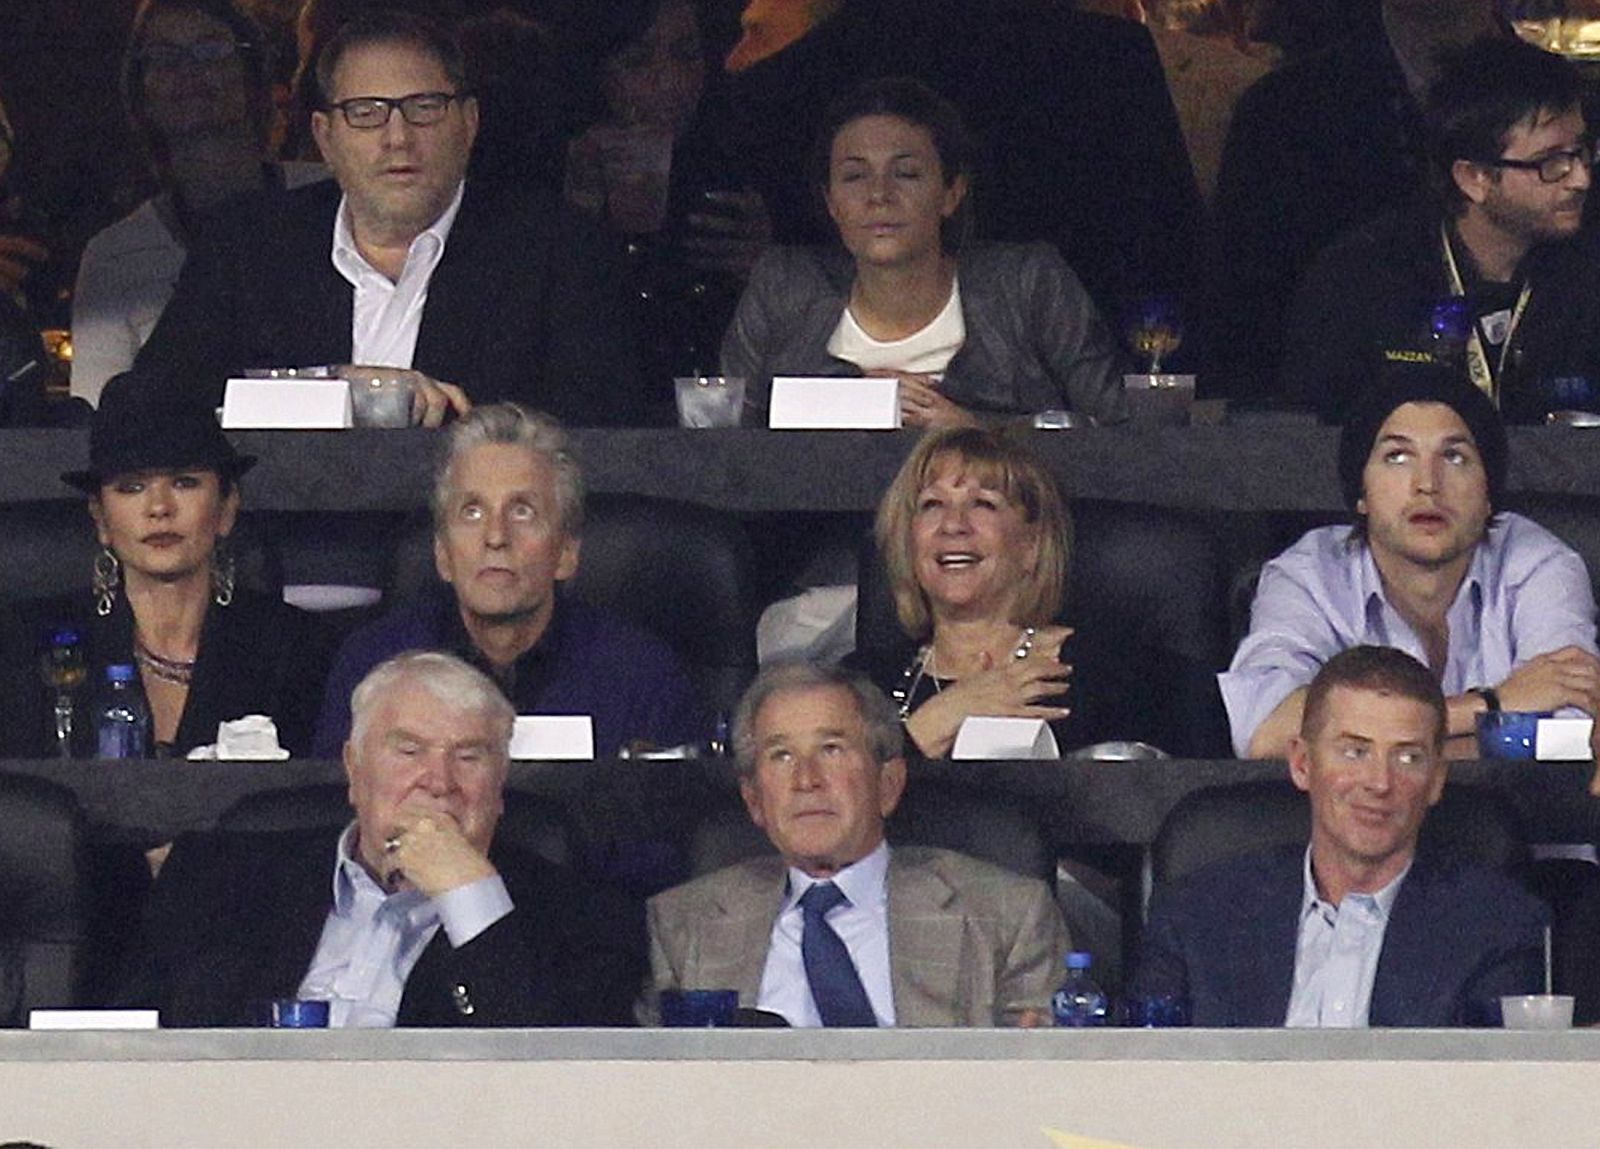 El expresidente Bush, en una imagen reciente tomada durante la Super Bowl, en Tejas.